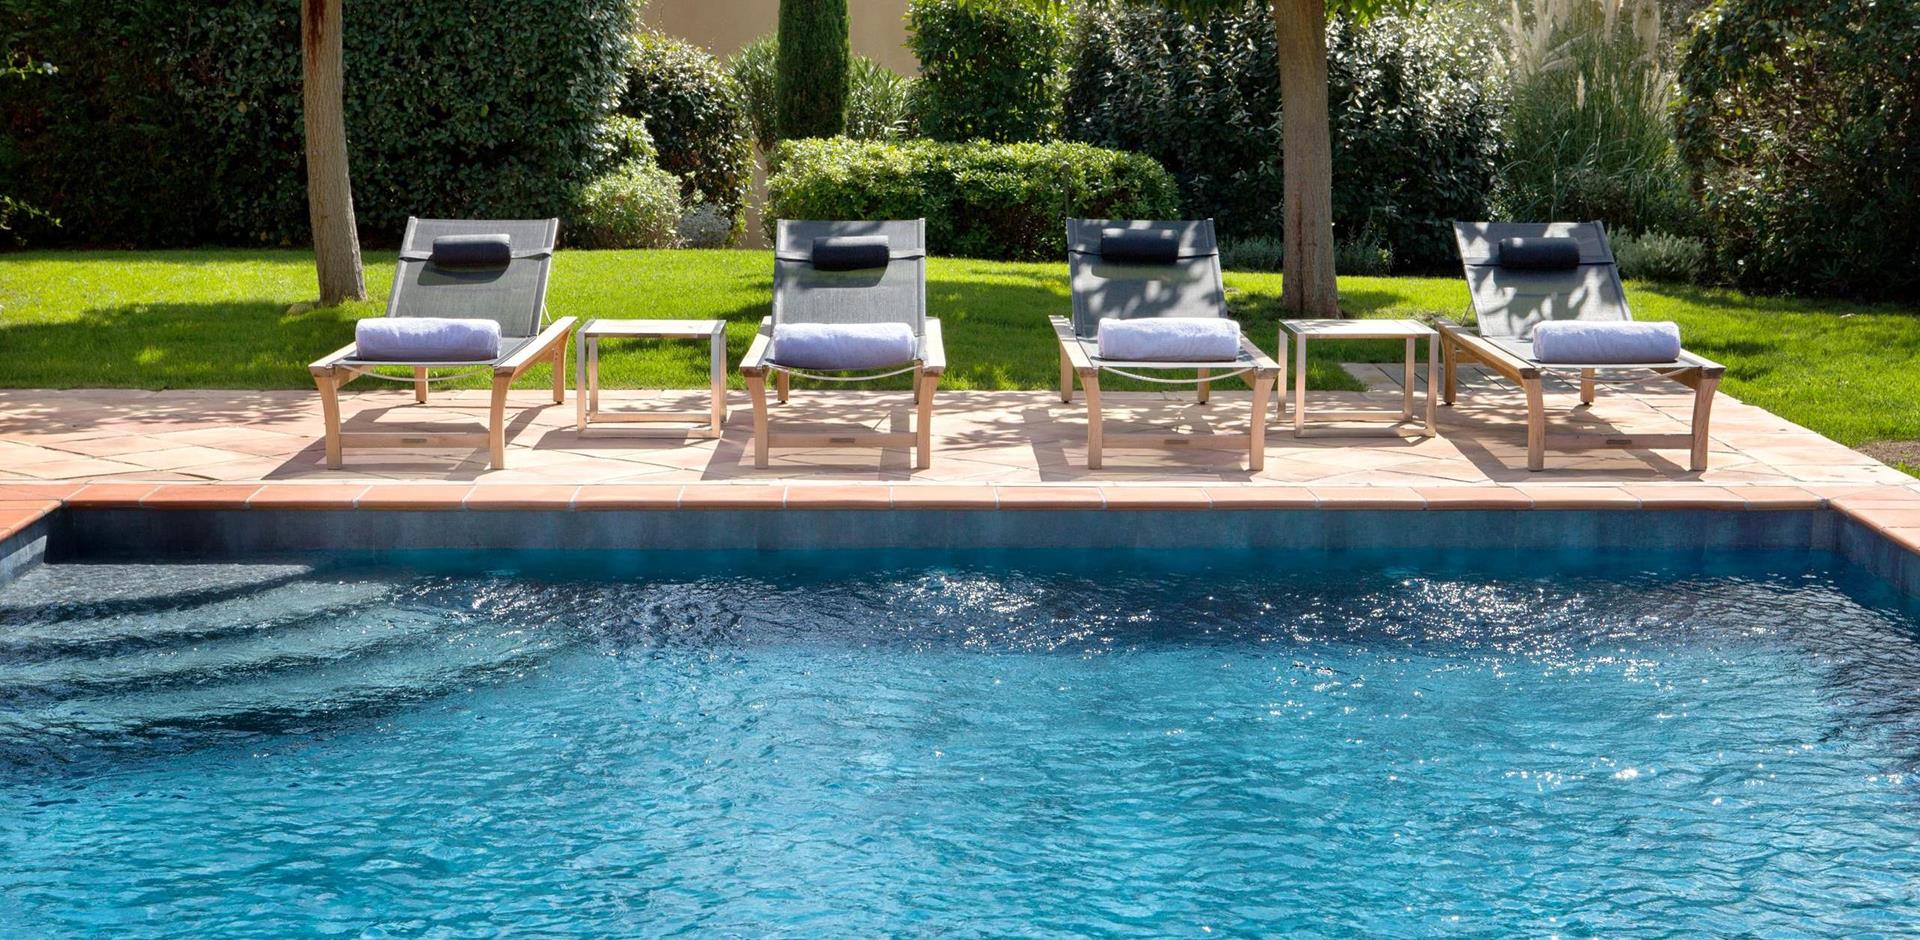 Swimming pool, Villa Coquelicot, La Reserve, Ramatuelle, Saint Tropez